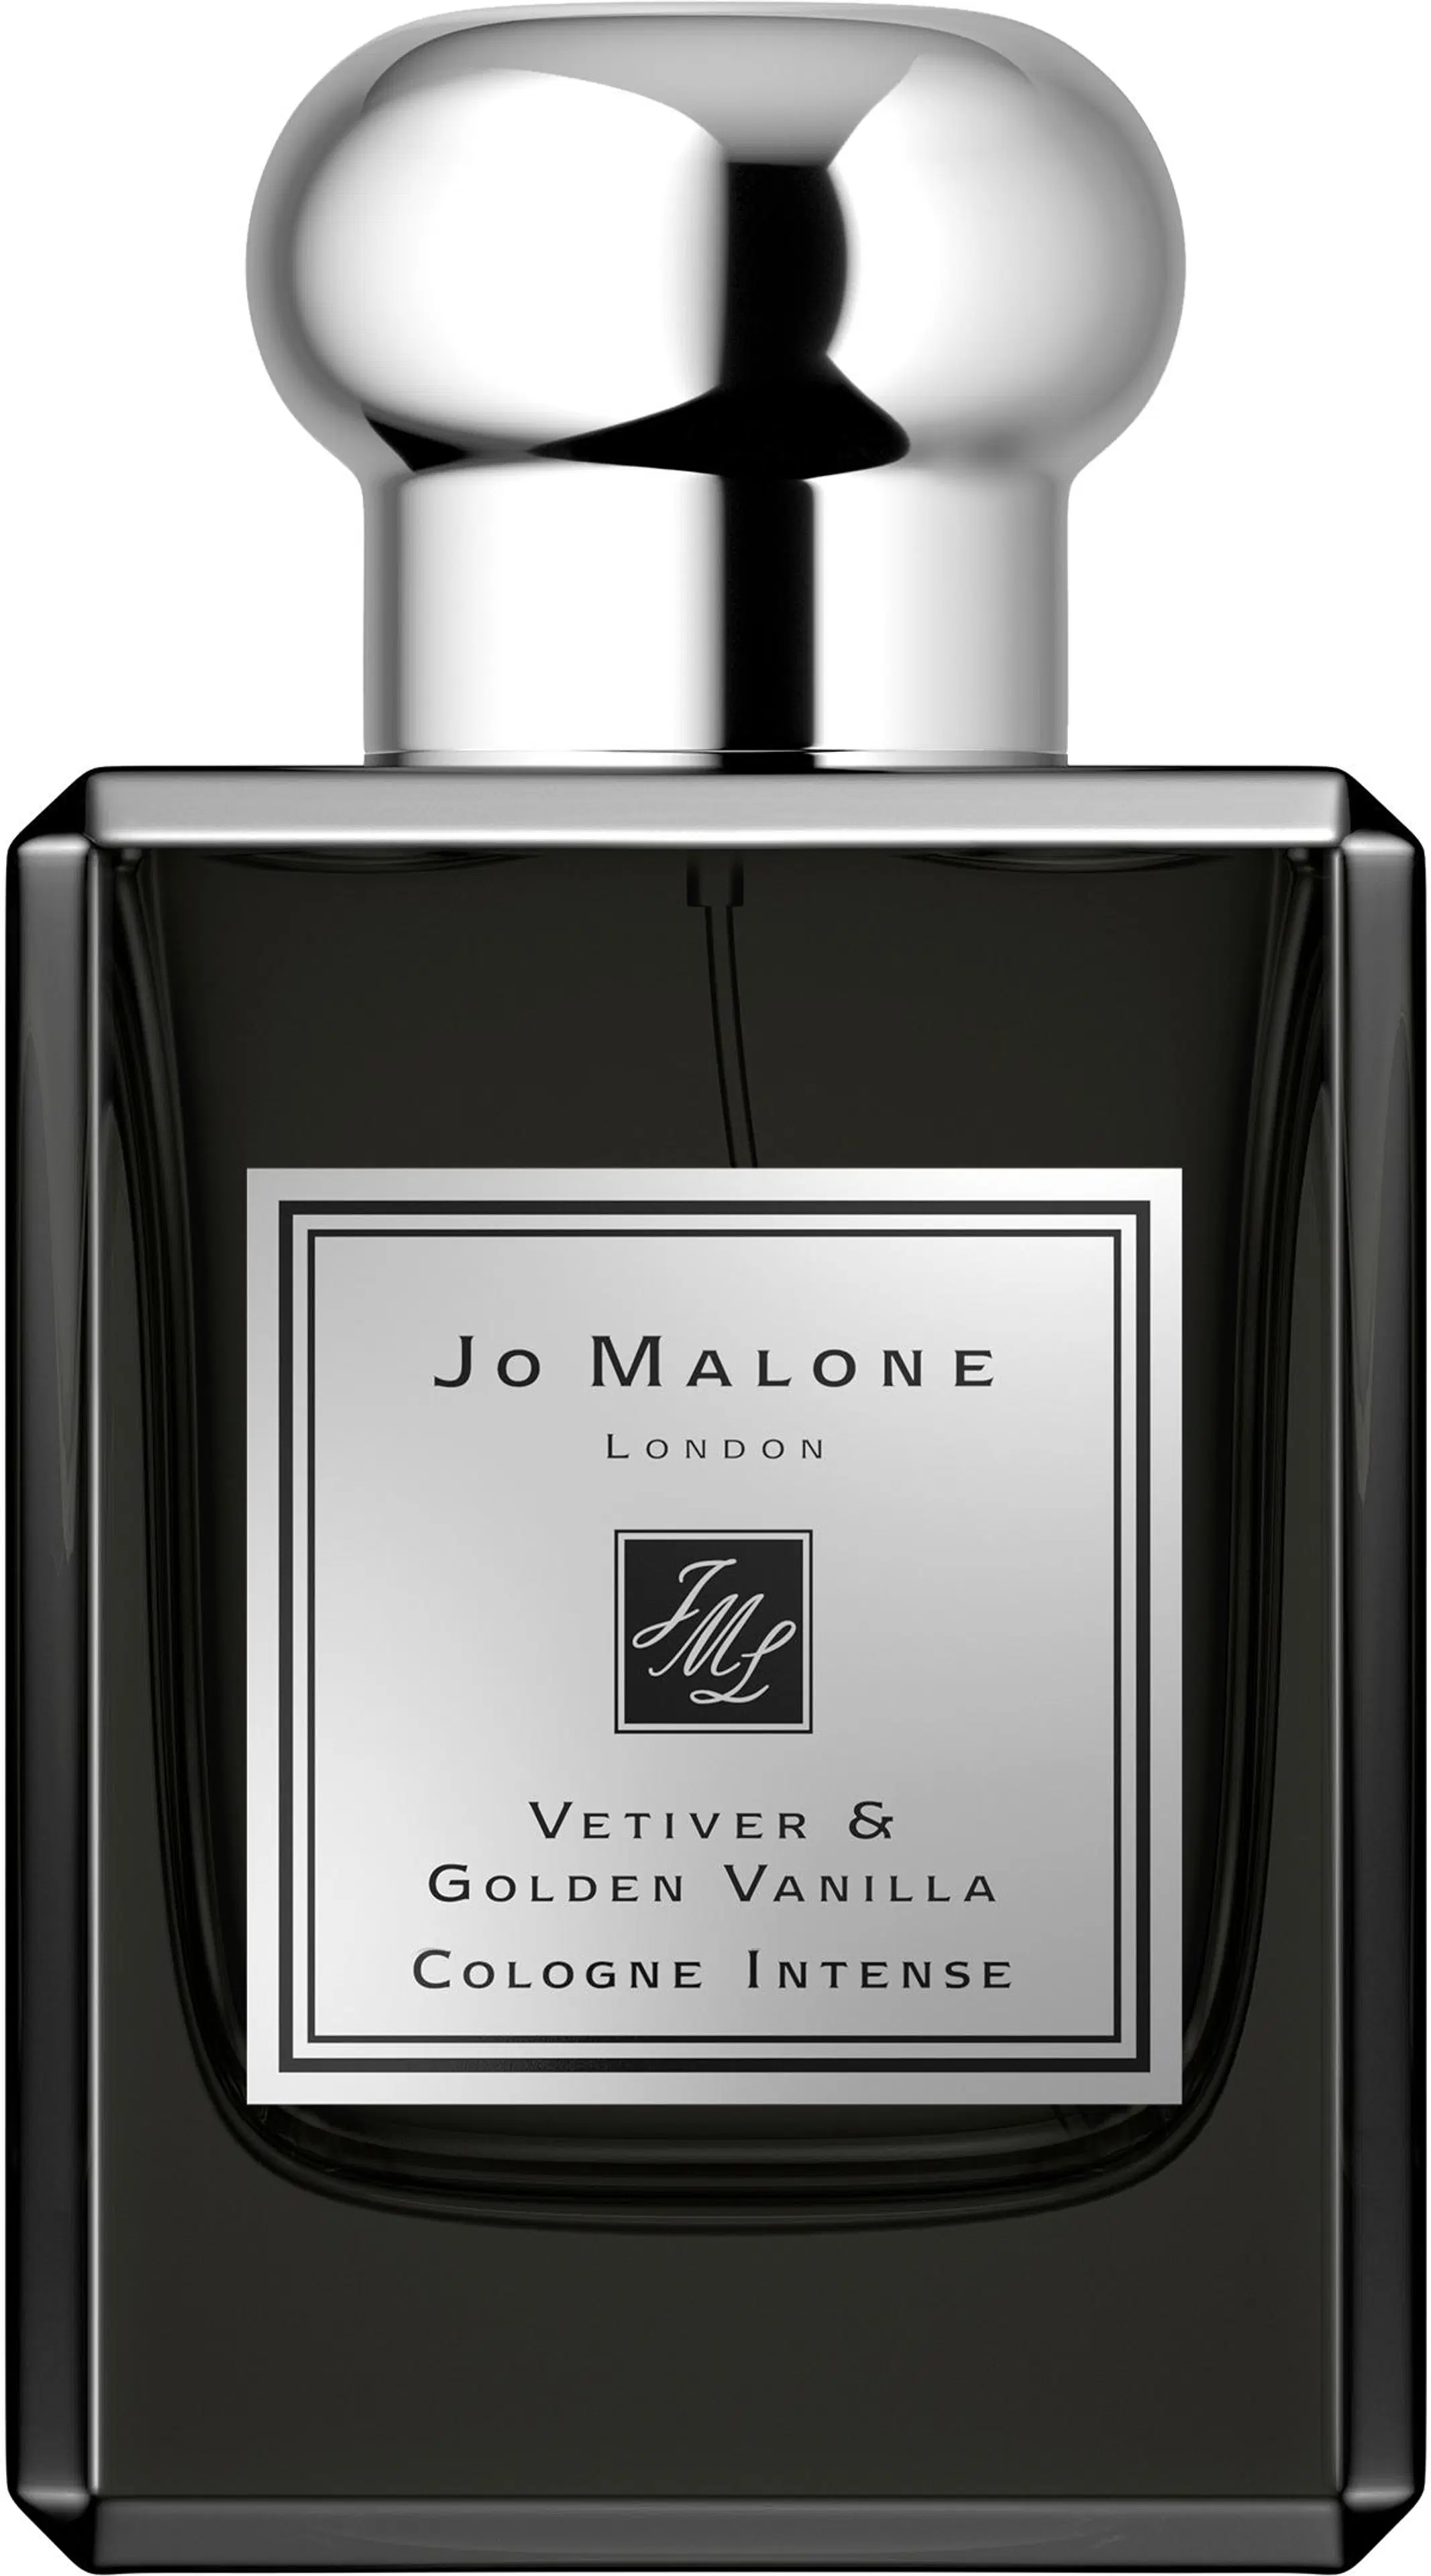 Jo Malone London Vetiver & Golden Vanilla Cologne Intense tuoksu 50ml